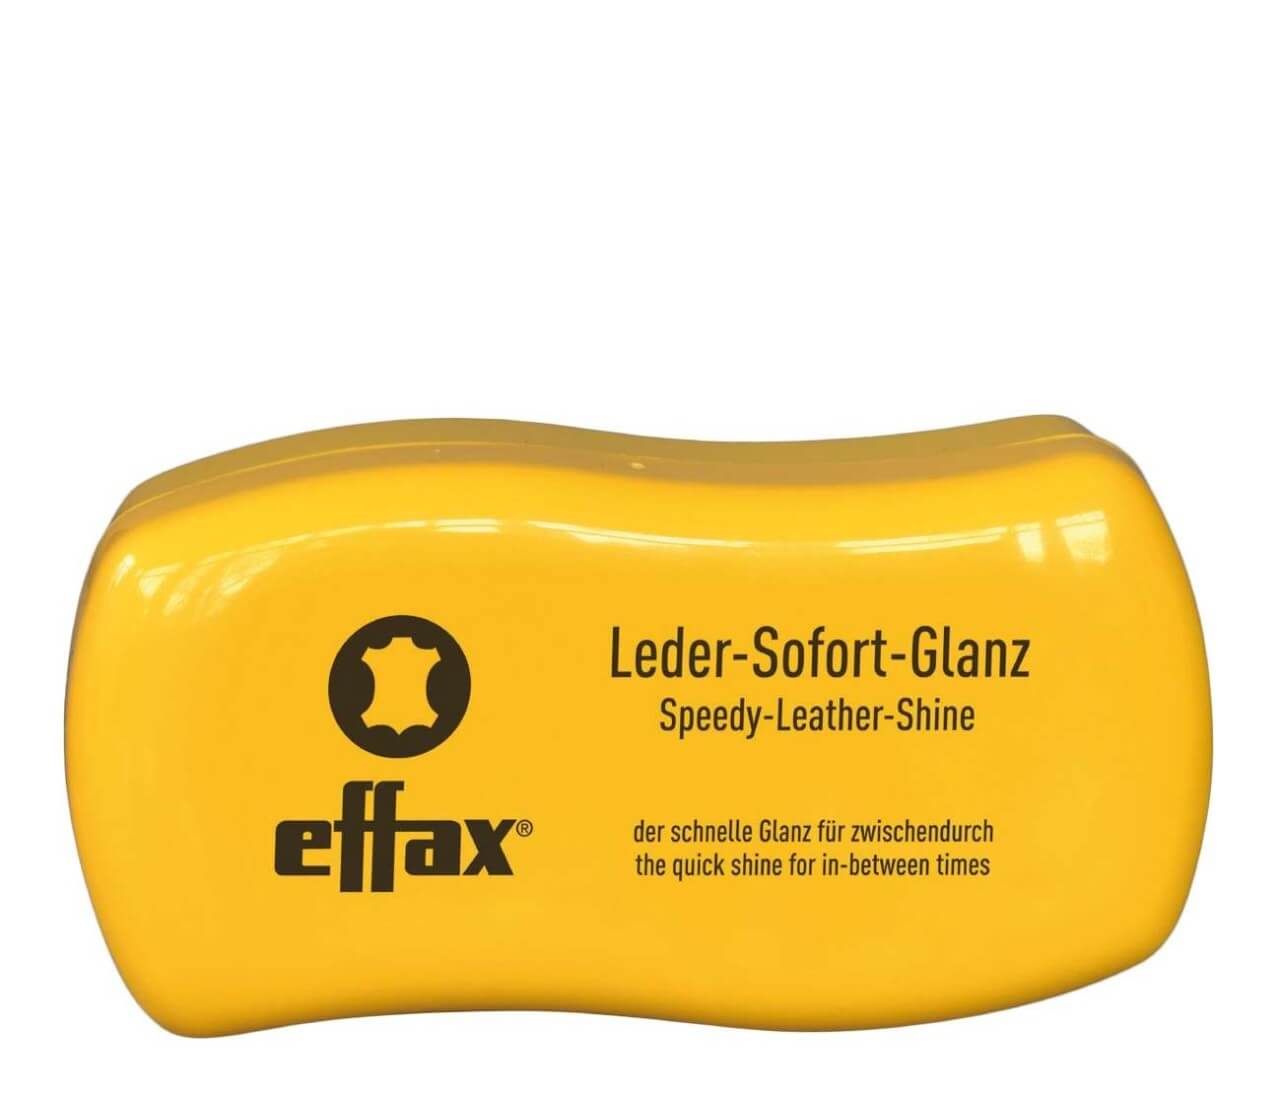 Effax Leder Sofort Glanz